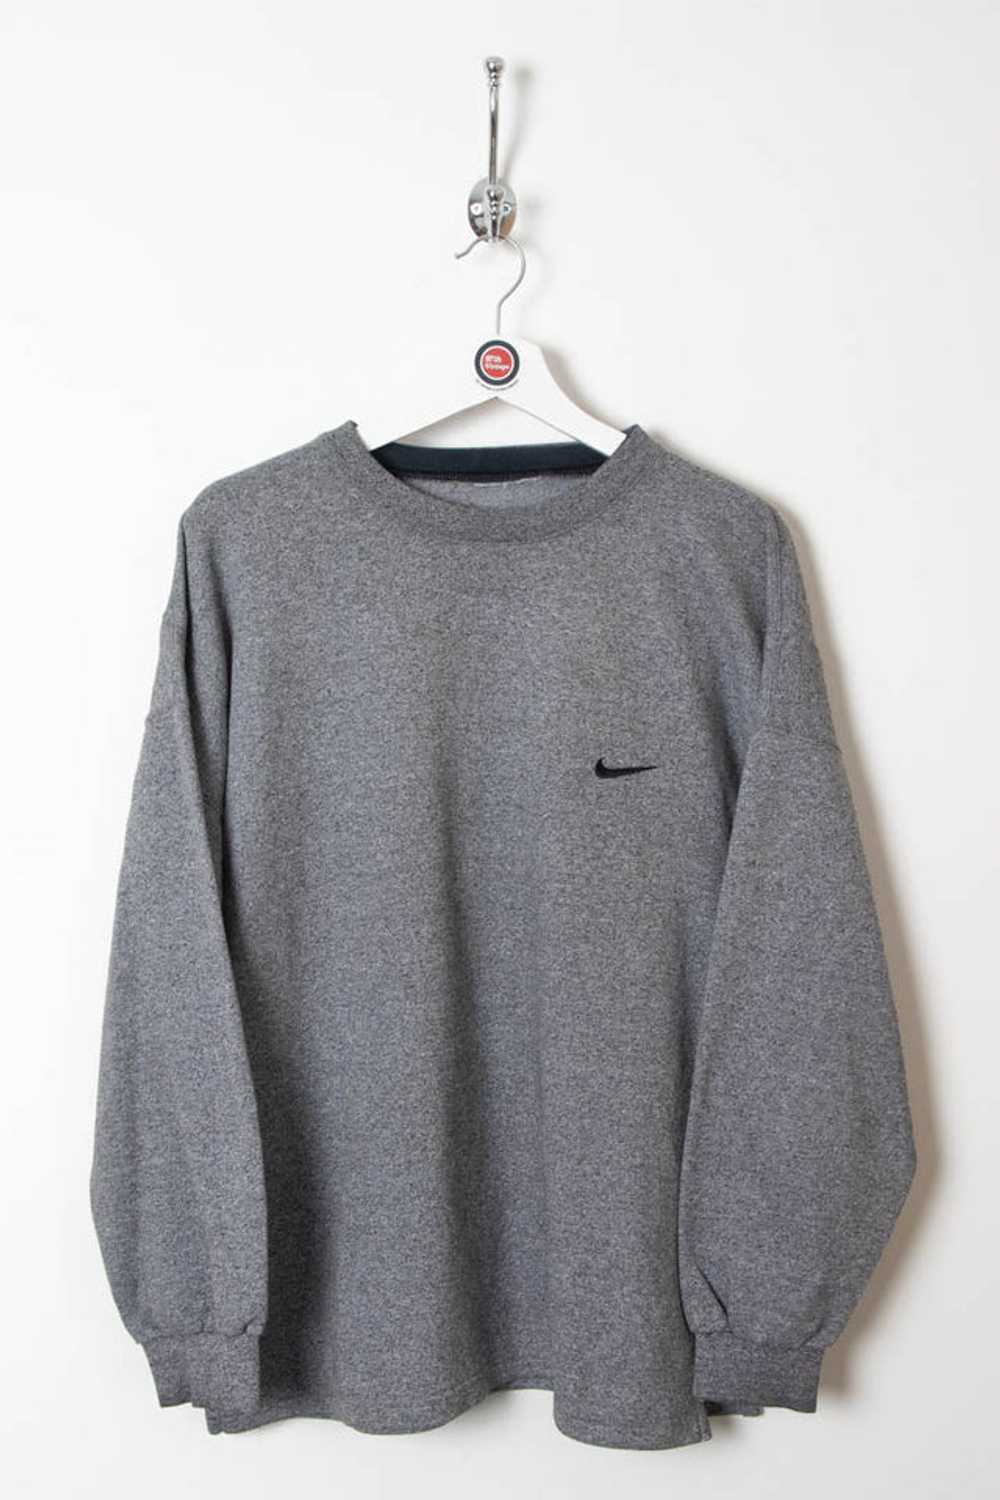 Nike Sweatshirt (S) - image 1